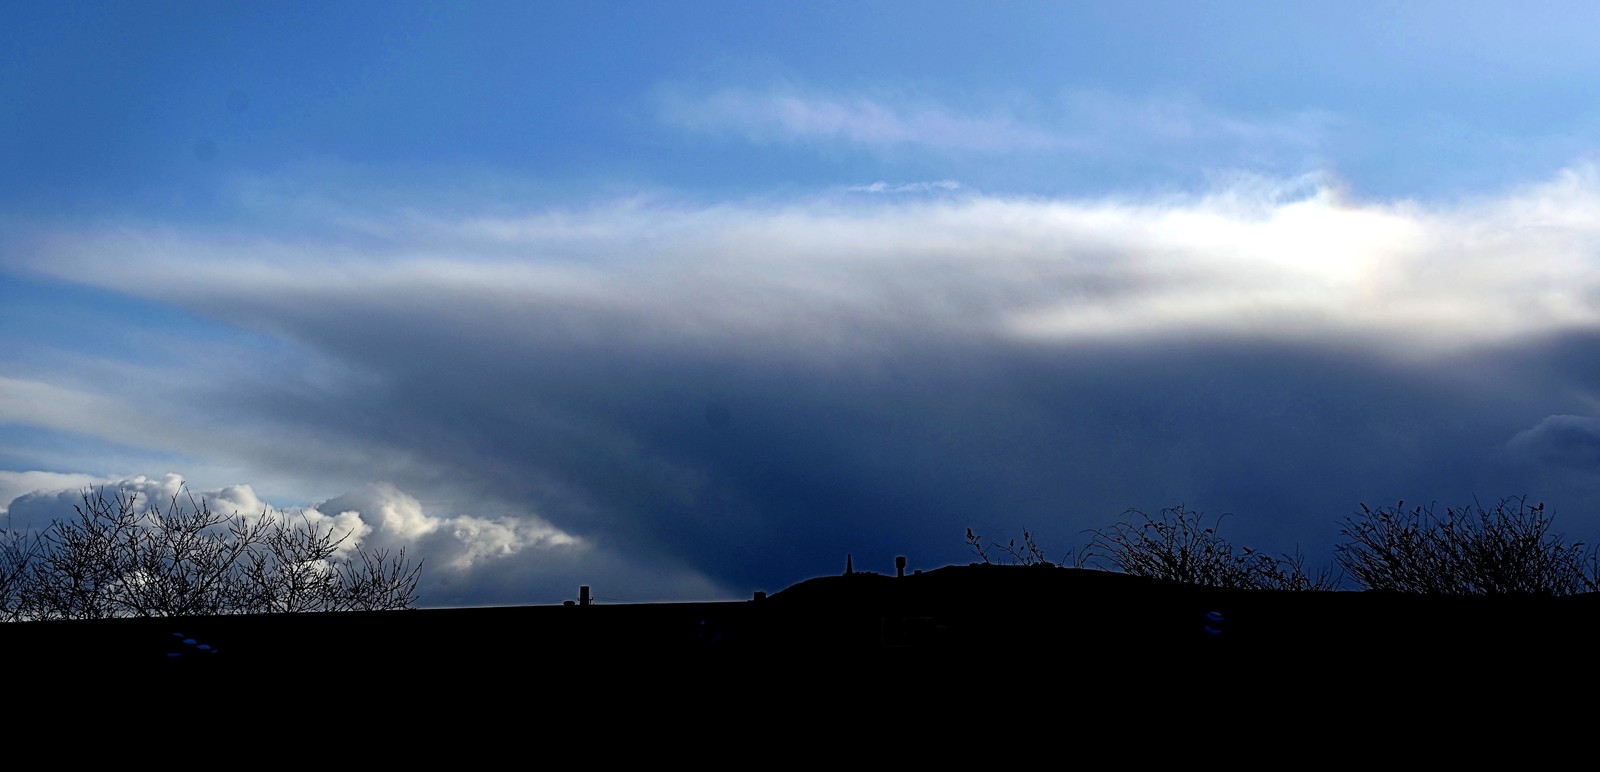 Eary morning - Cumulonimbus over Carn Brea, Redruth